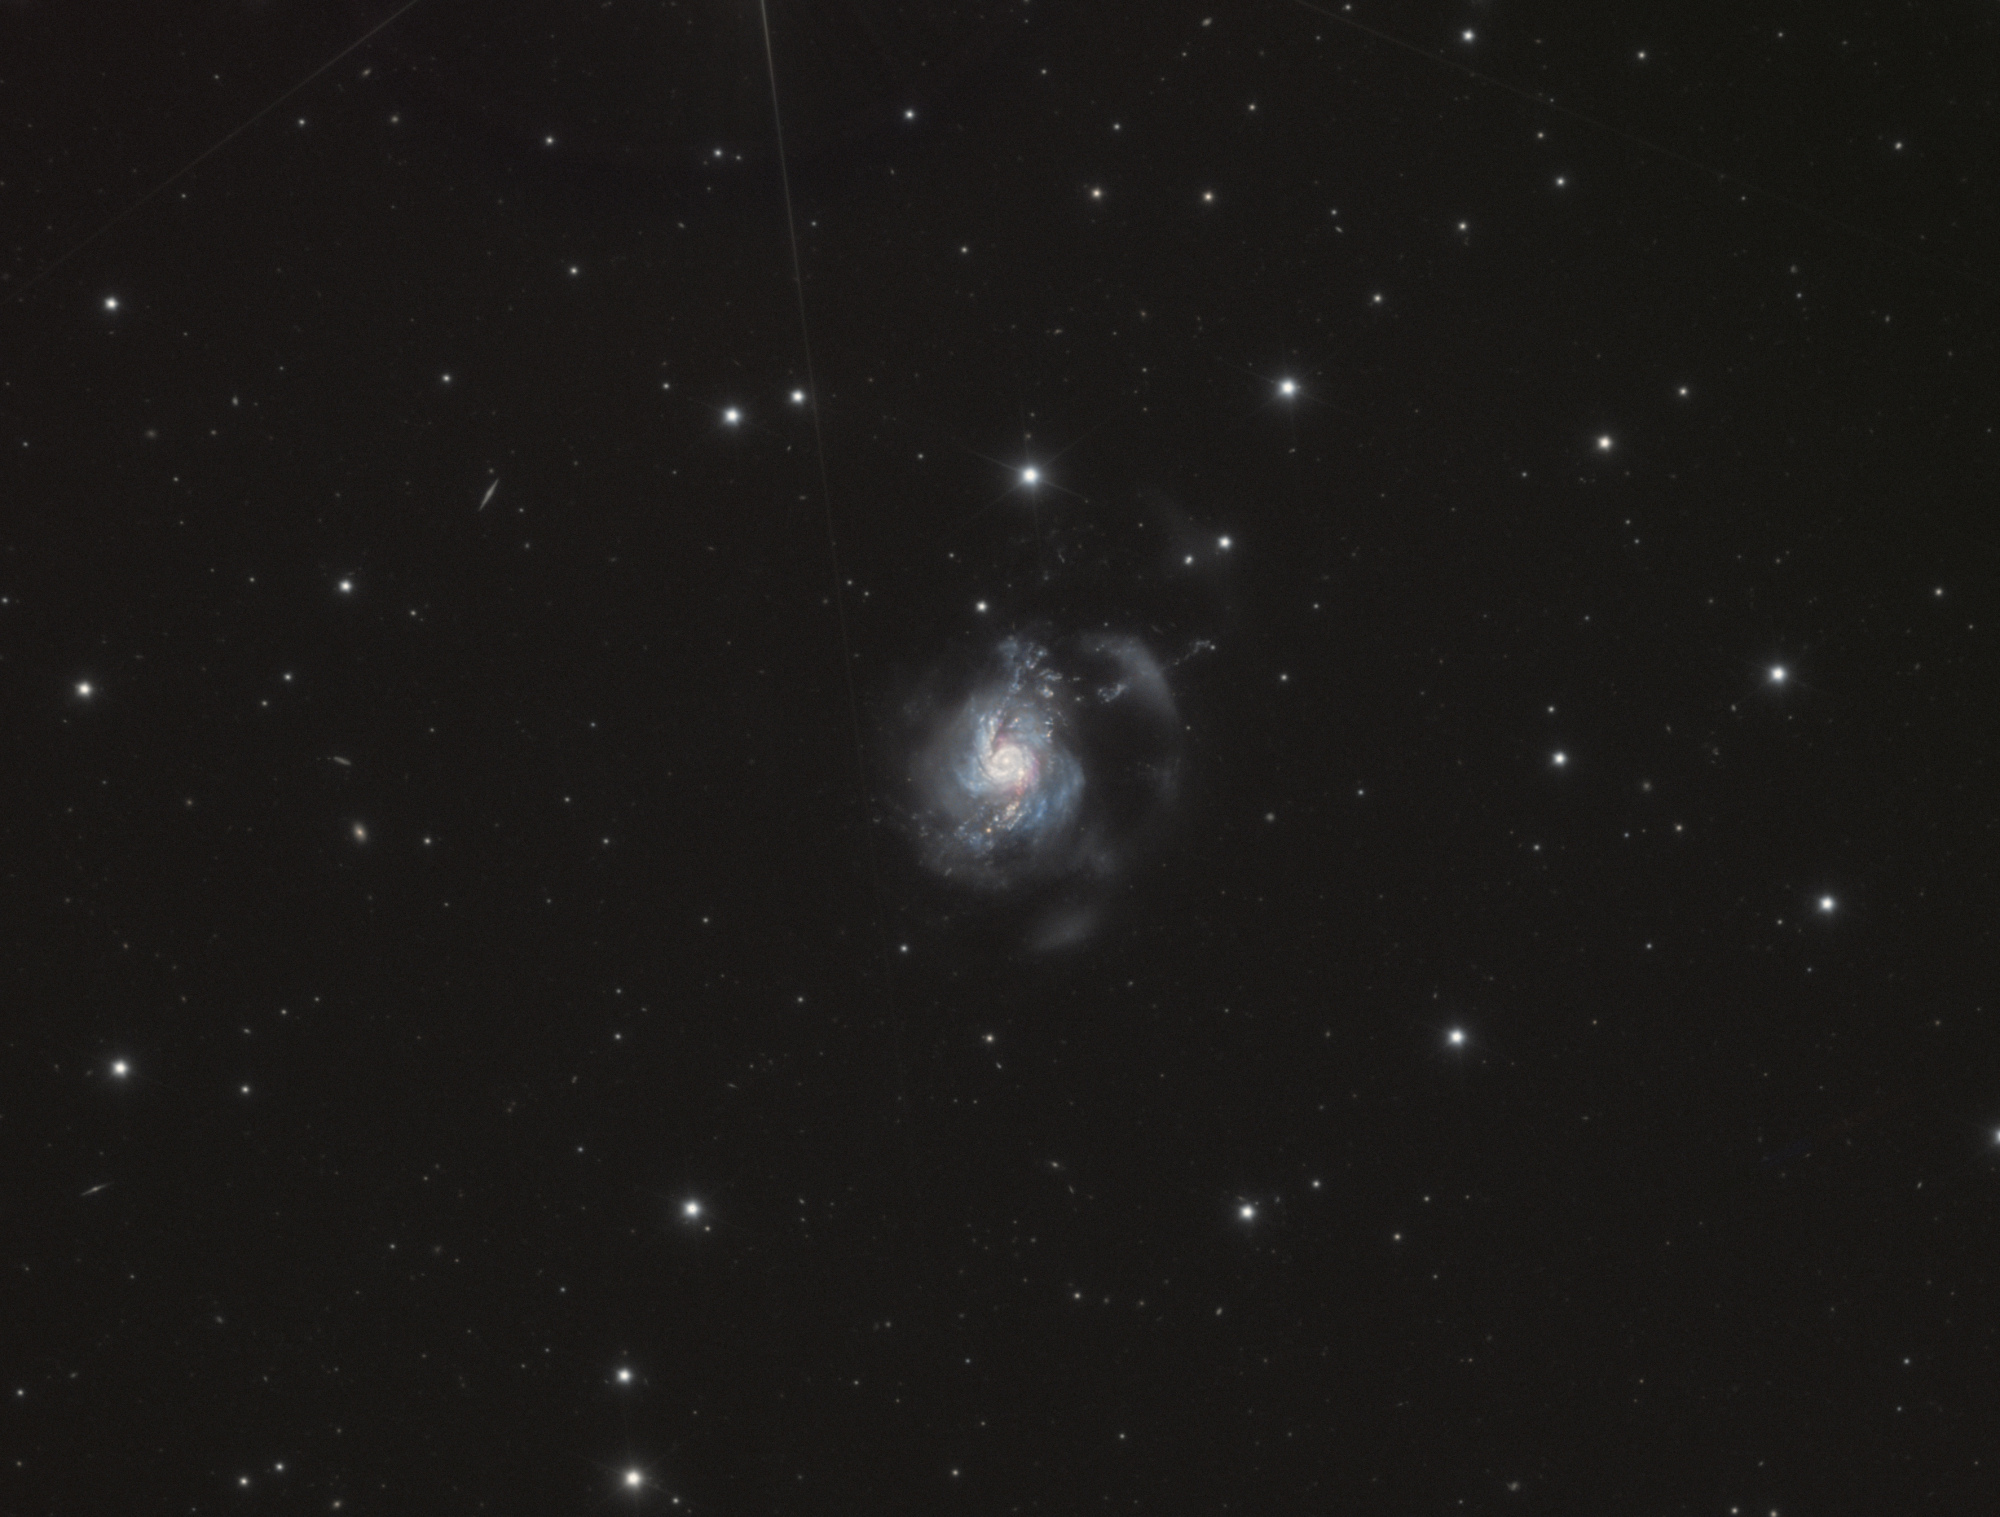 NGC_3310_LRVB_full_finale3.thumb.jpg.54d7ed93dc11132f59fafe5301eb8f6a.jpg